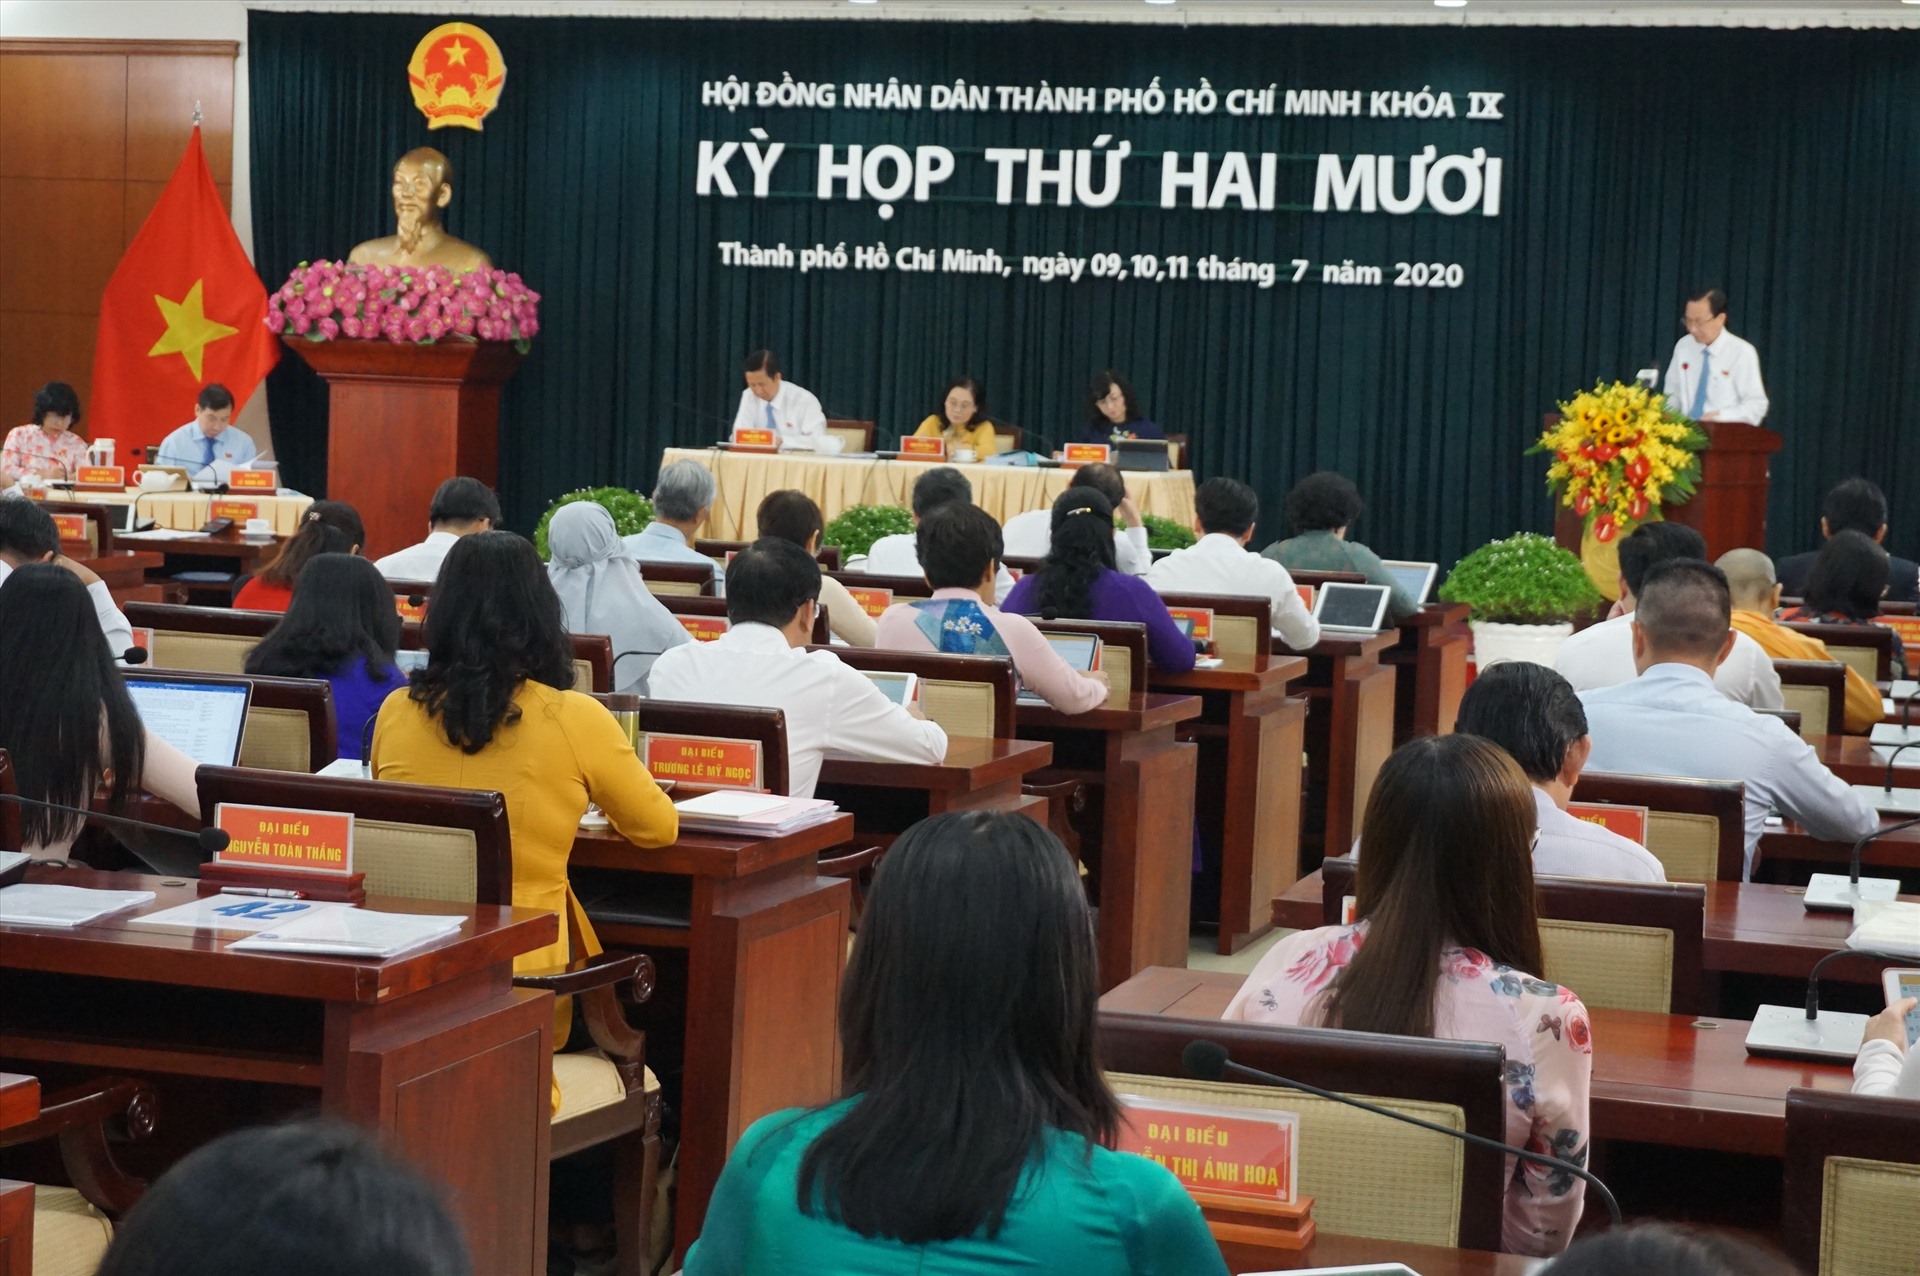 Kỳ họp thứ 12 HĐND TPHCM khóa IX sẽ diễn ra trong 3 ngày, từ ngày 9 đến ngày 11.7.  Ảnh: Minh Quân